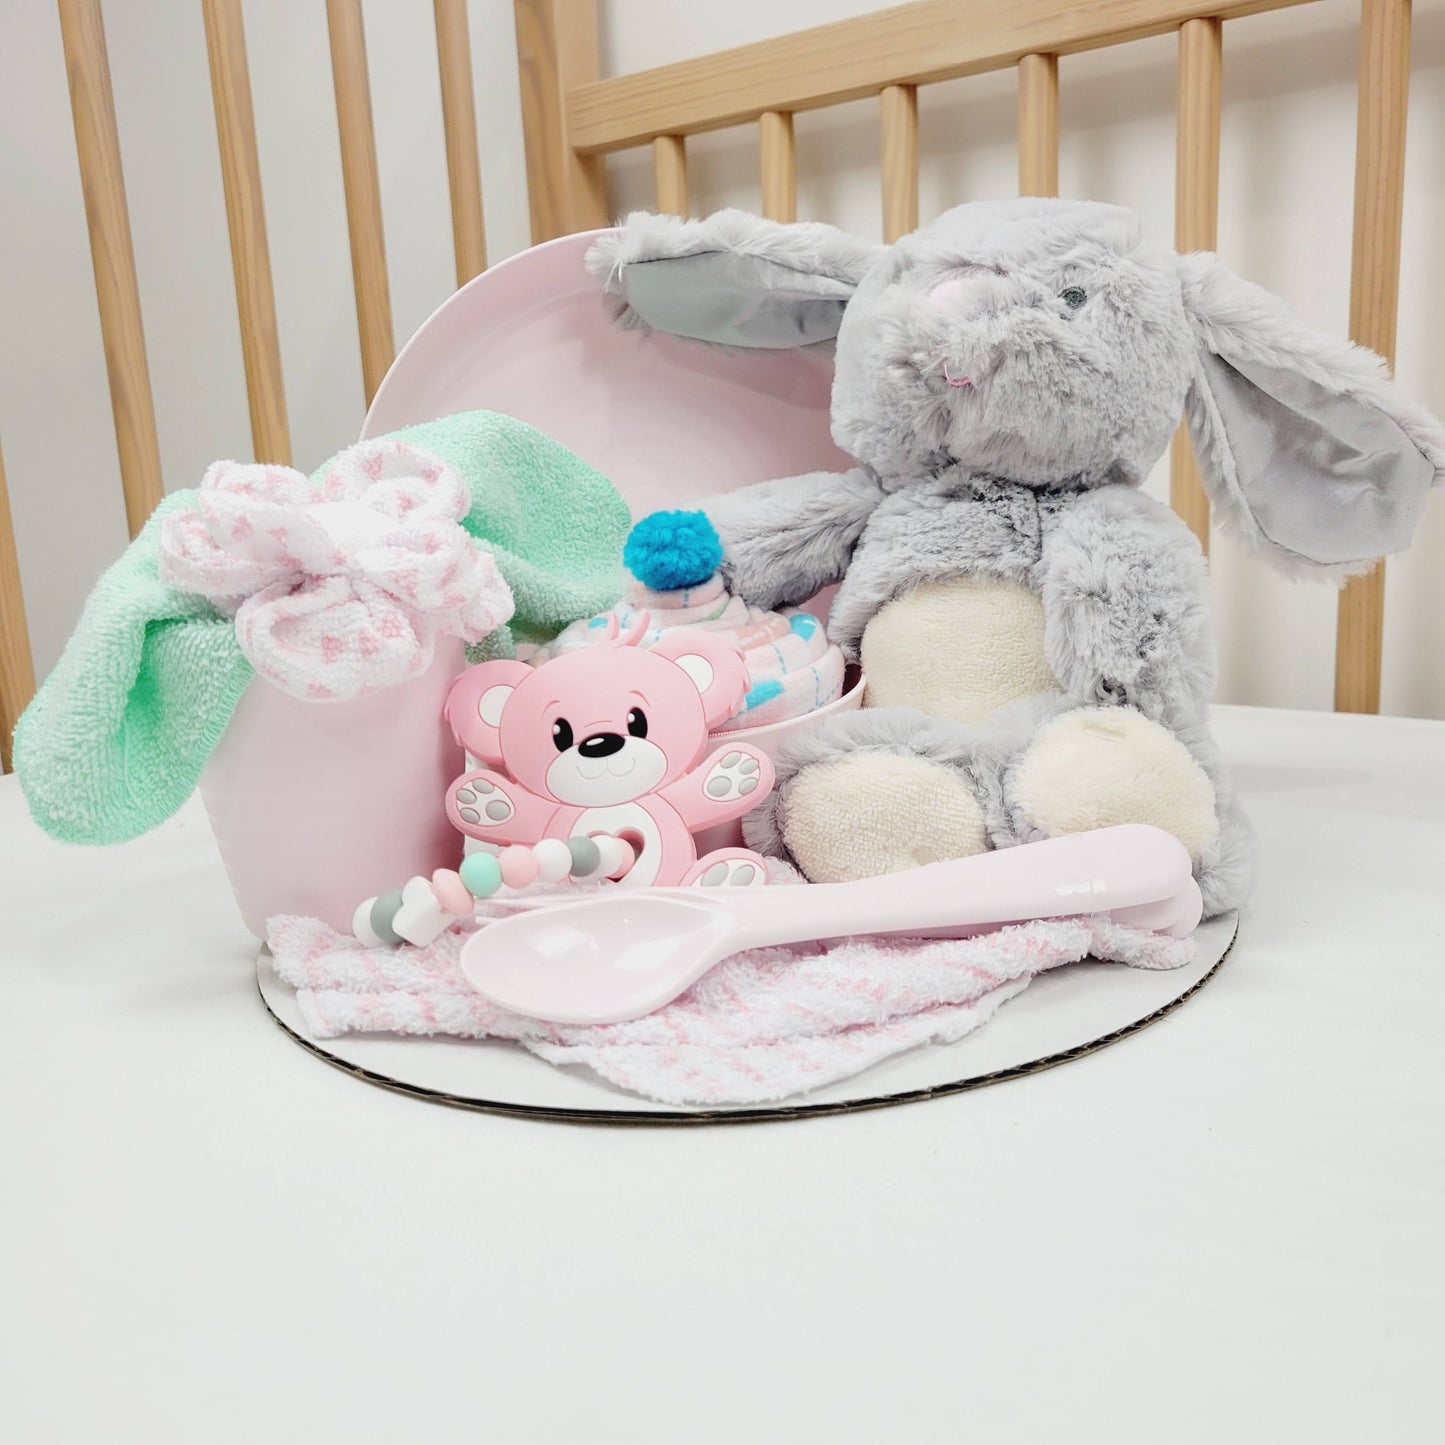 Ensemble cadeau de babyshower. Avec un toutou lapin gris, une couverture rose en flanelle. Complété d'une assiette, un bol et un verre rose avec des ustensiles pour enfant.  